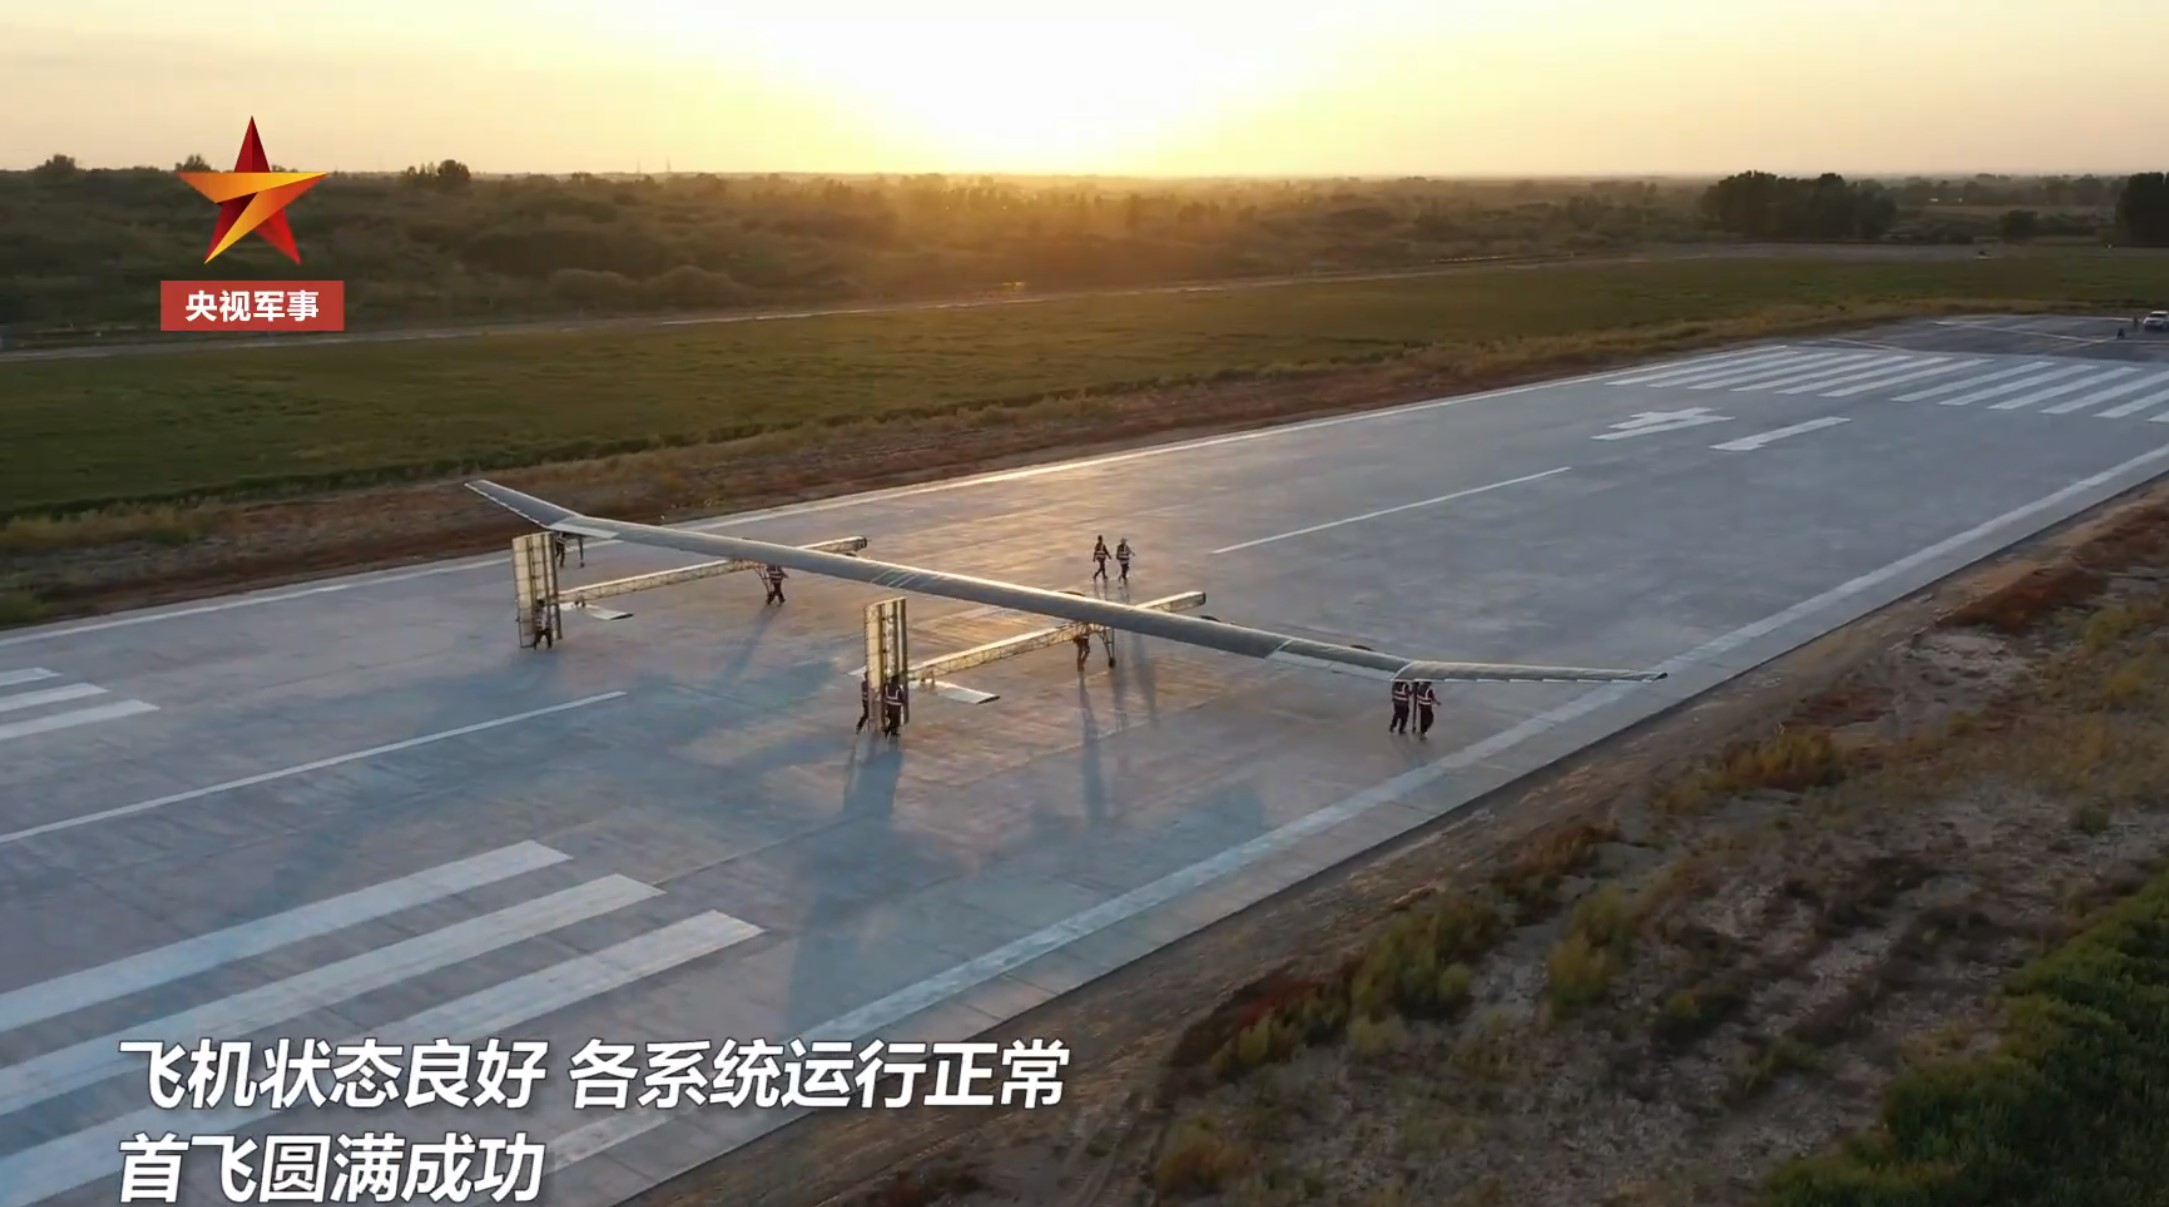 我国首款太阳能大型双机身无人机首飞成功